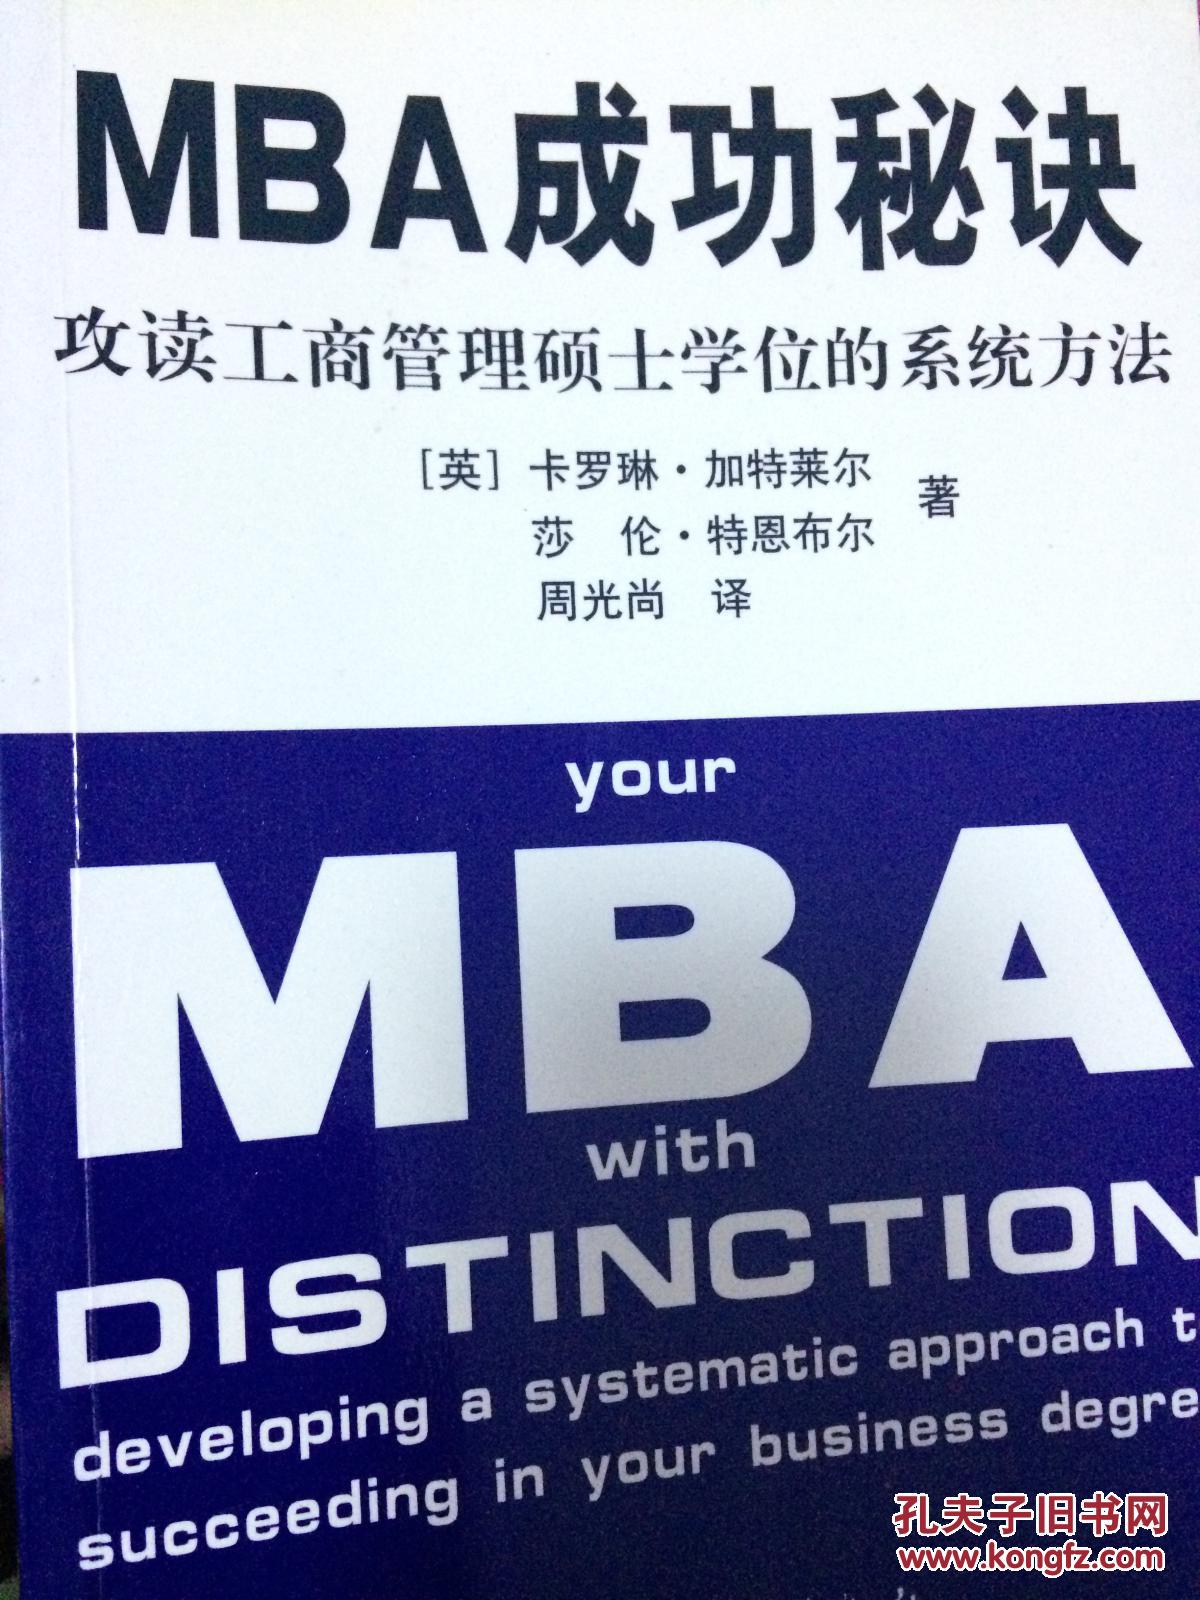 MBA成功秘诀 攻读工商管理硕士学位的系统方法